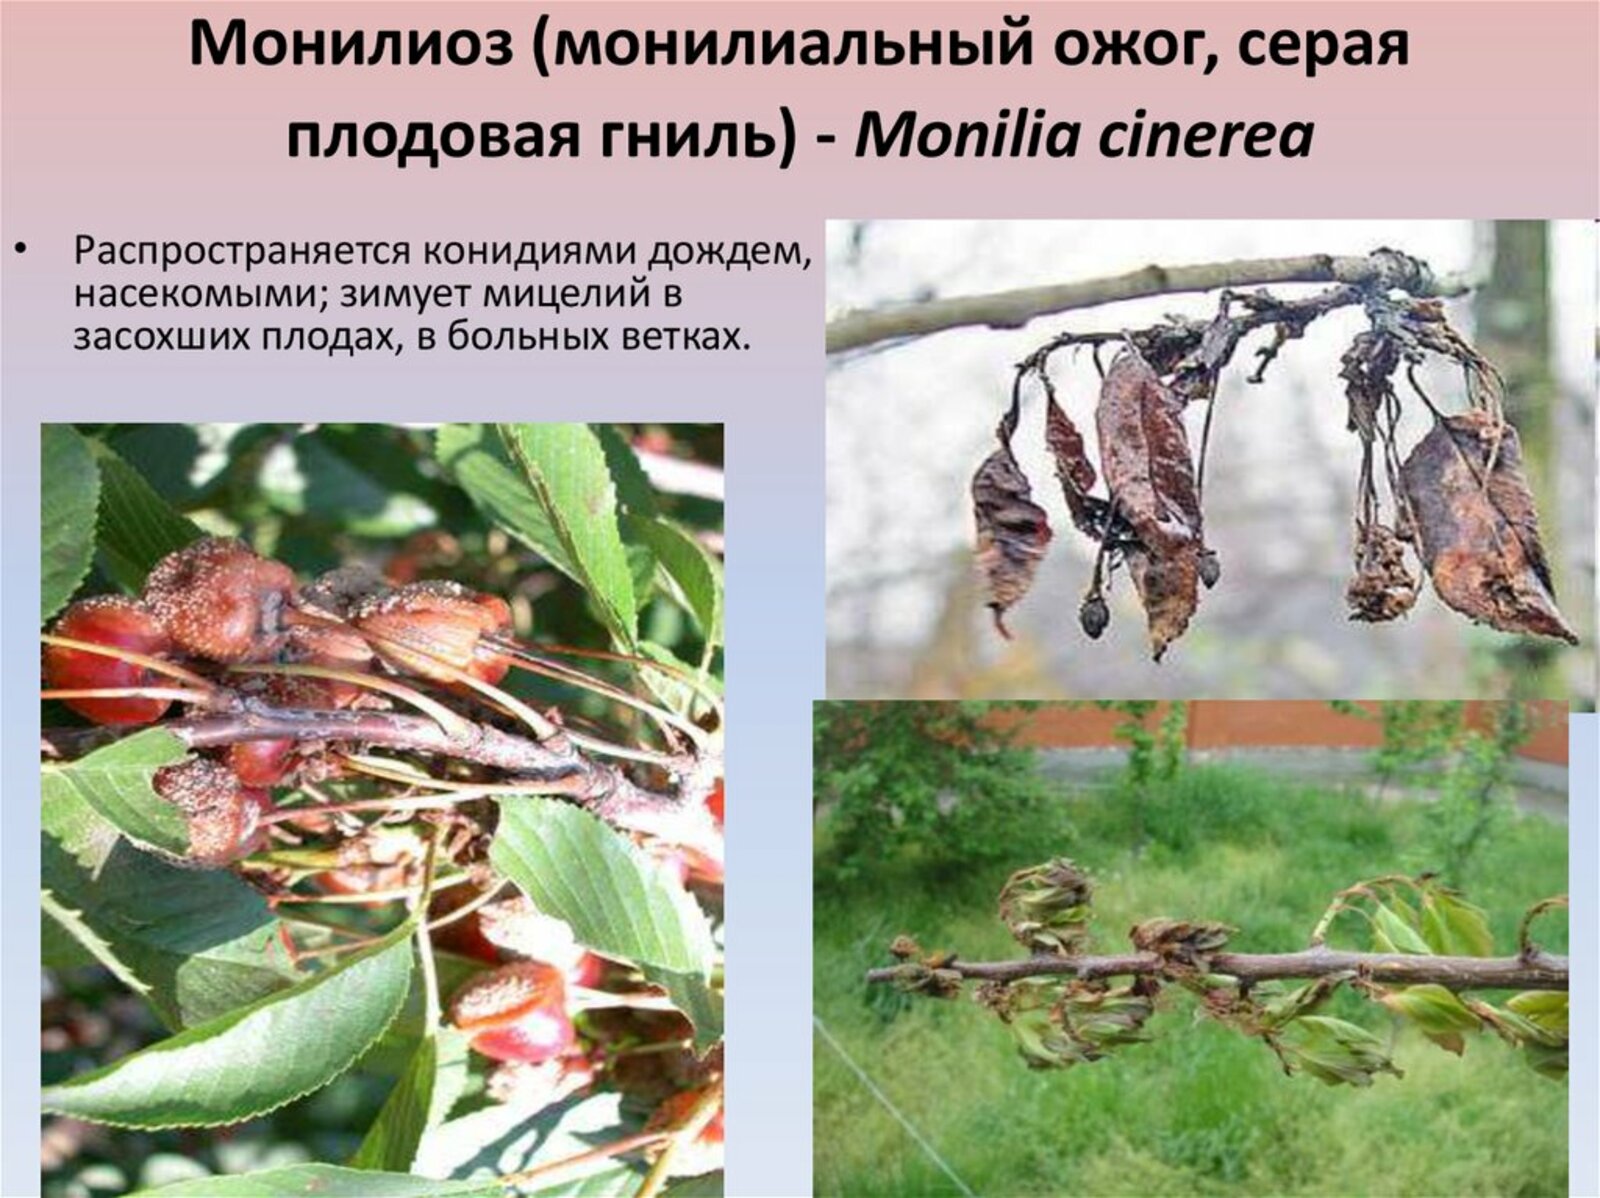 Обработка плодовых деревьев от монилиоза осенью